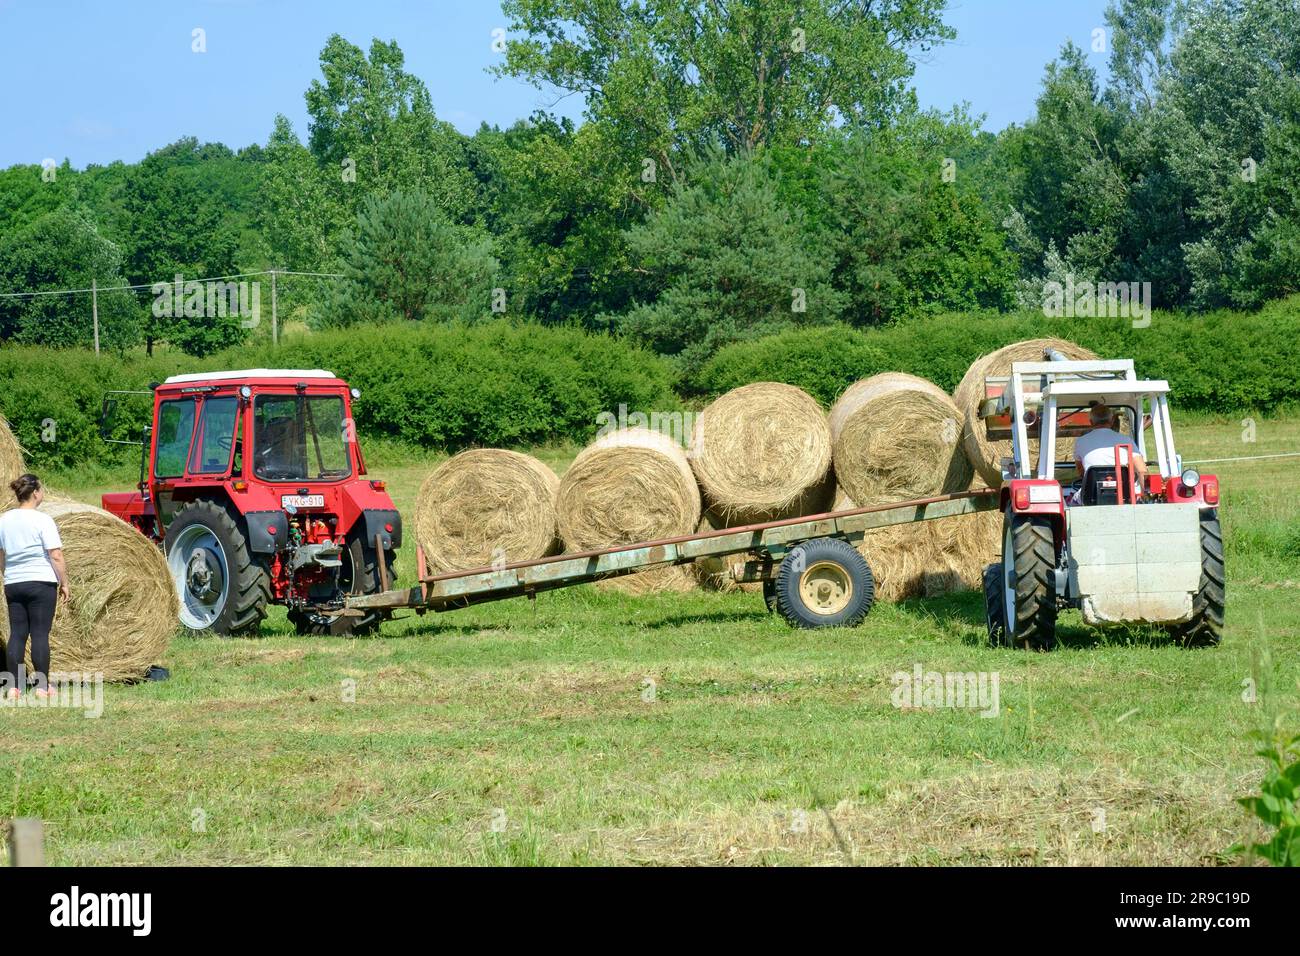 tracteur steyr 650 utilisé pour empiler des balles rondes de foin déchargées de la remorque après la récolte du comté de zala en hongrie Banque D'Images